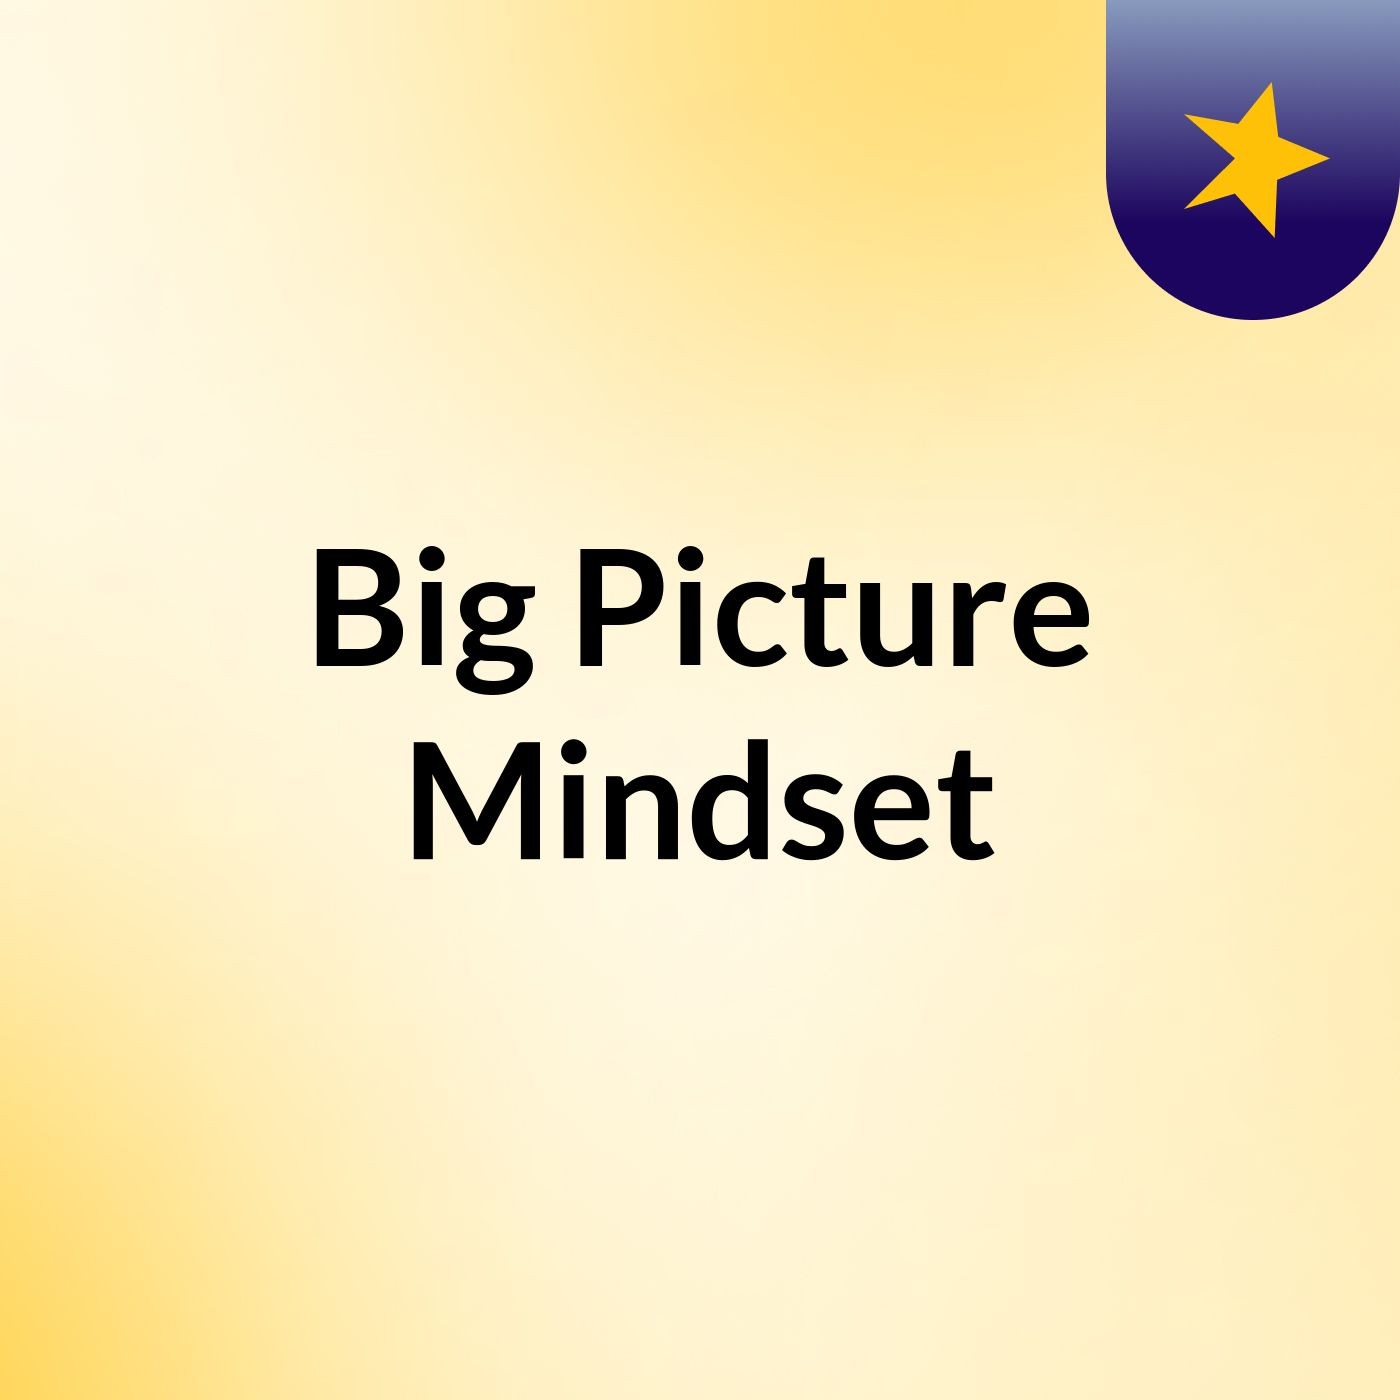 Big Picture Mindset